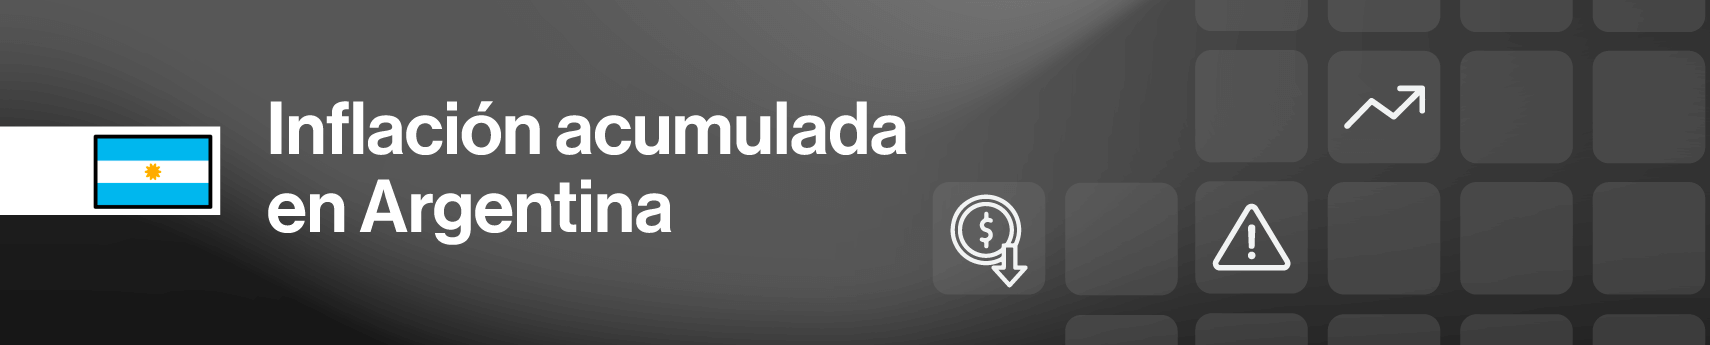 https://www.bloomberglinea.com/mercados/argentina/calculadora-inflacion/